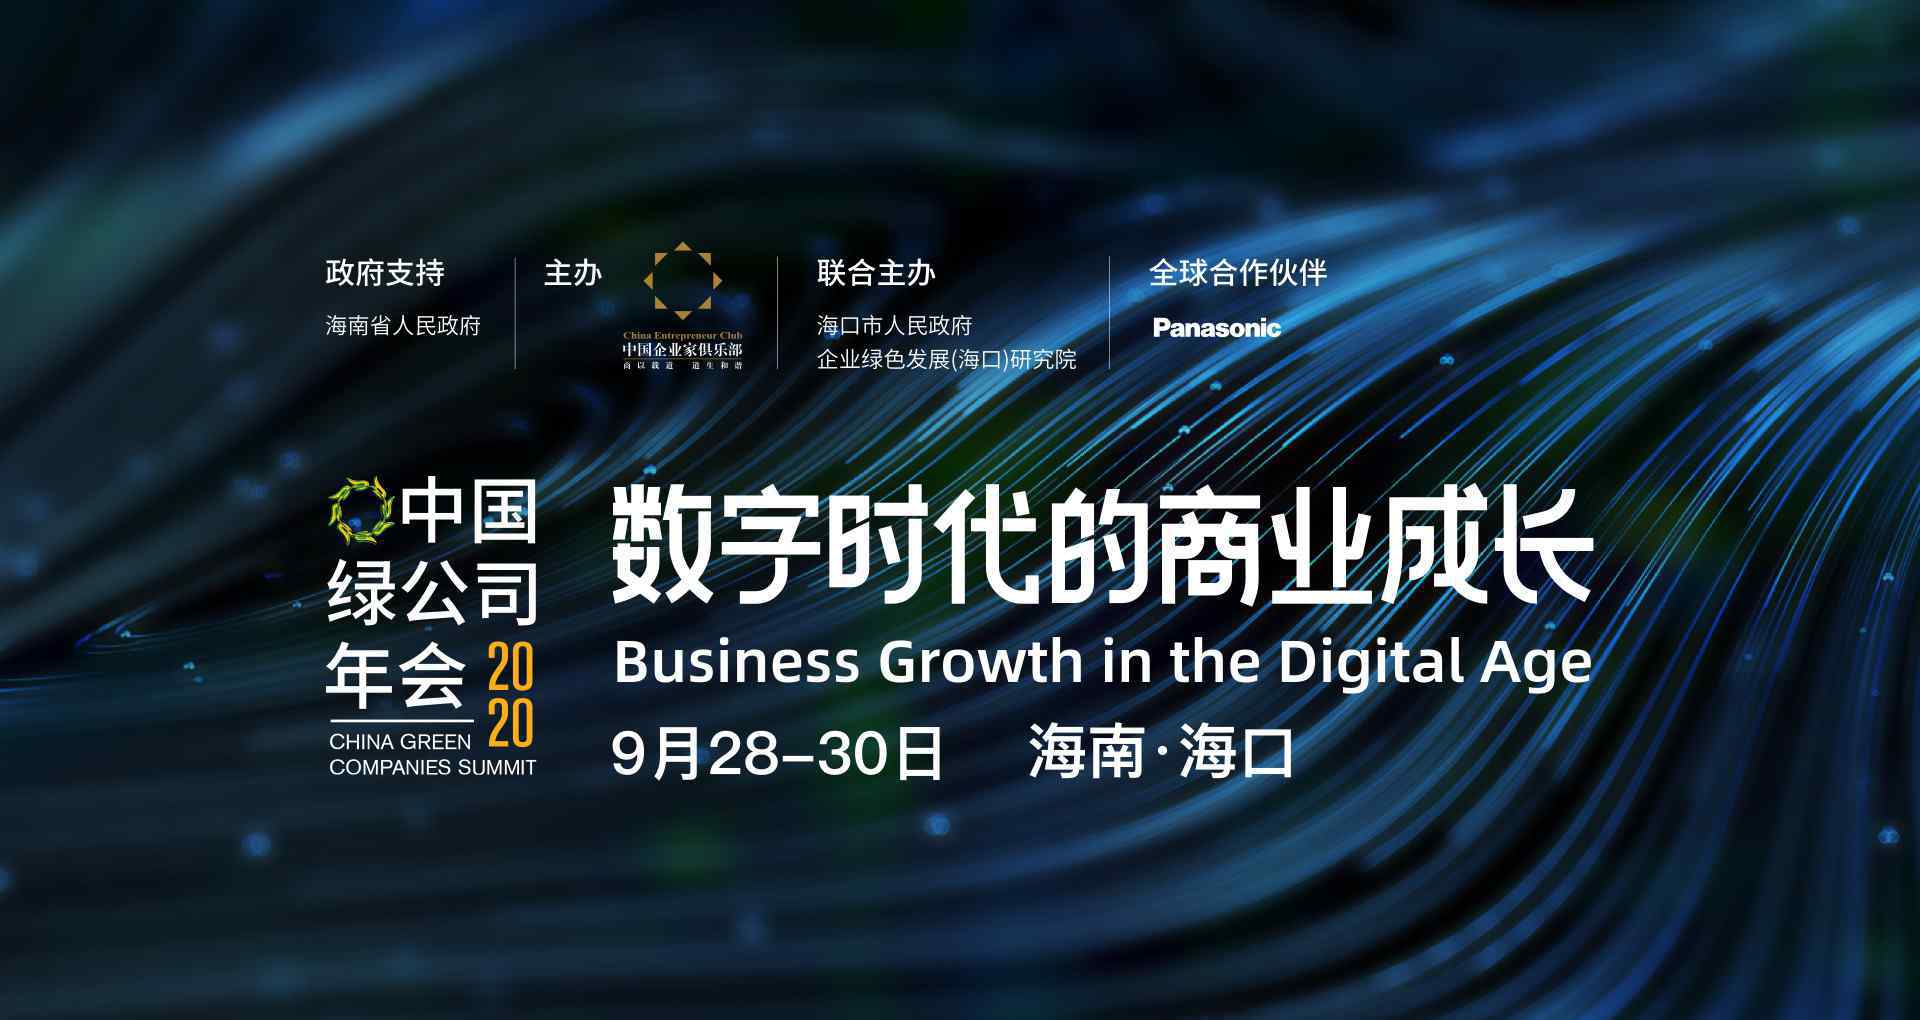 绿公司年会 中国绿公司年会：马云雷军共话数字时代的商业成长